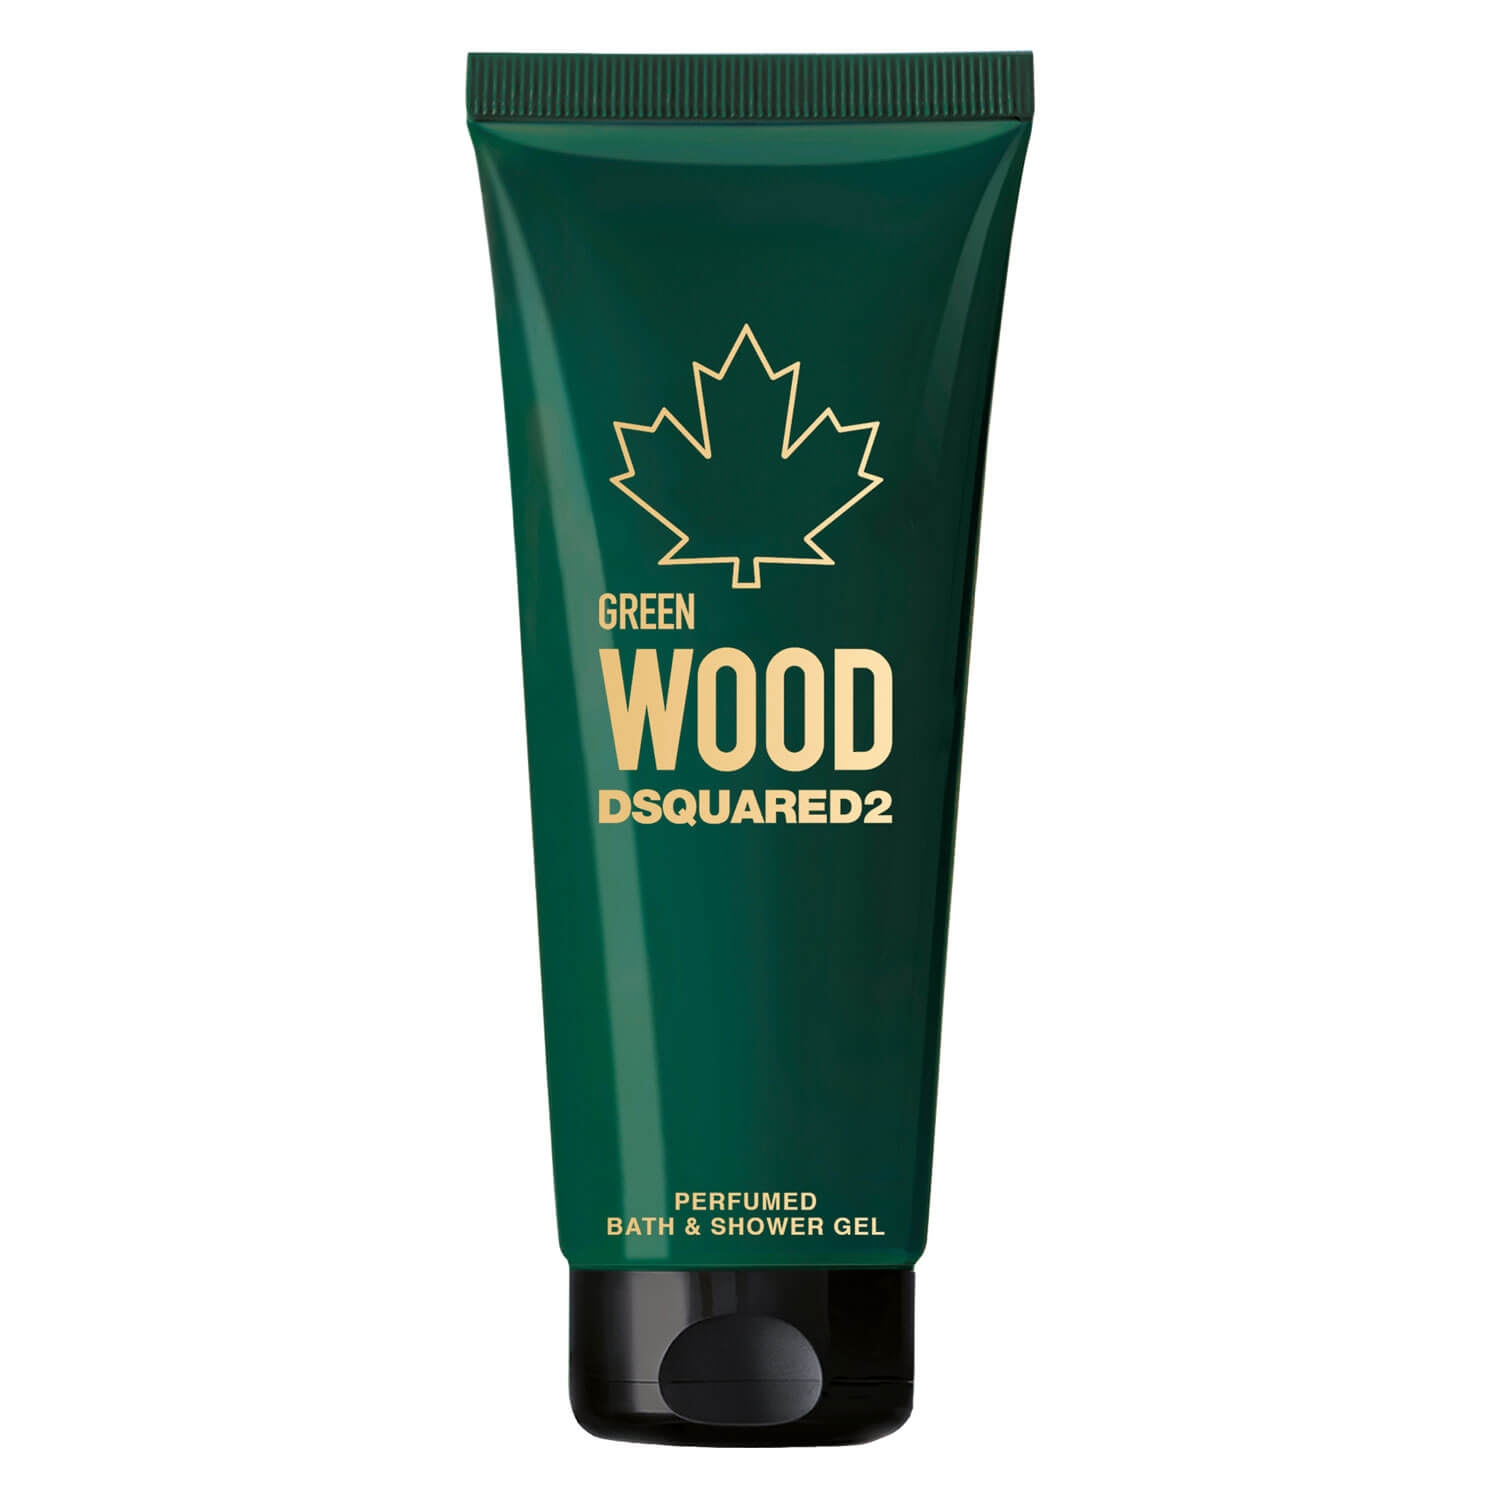 Produktbild von DSQUARED2 WOOD - Green Pour Homme Bath & Shower Gel